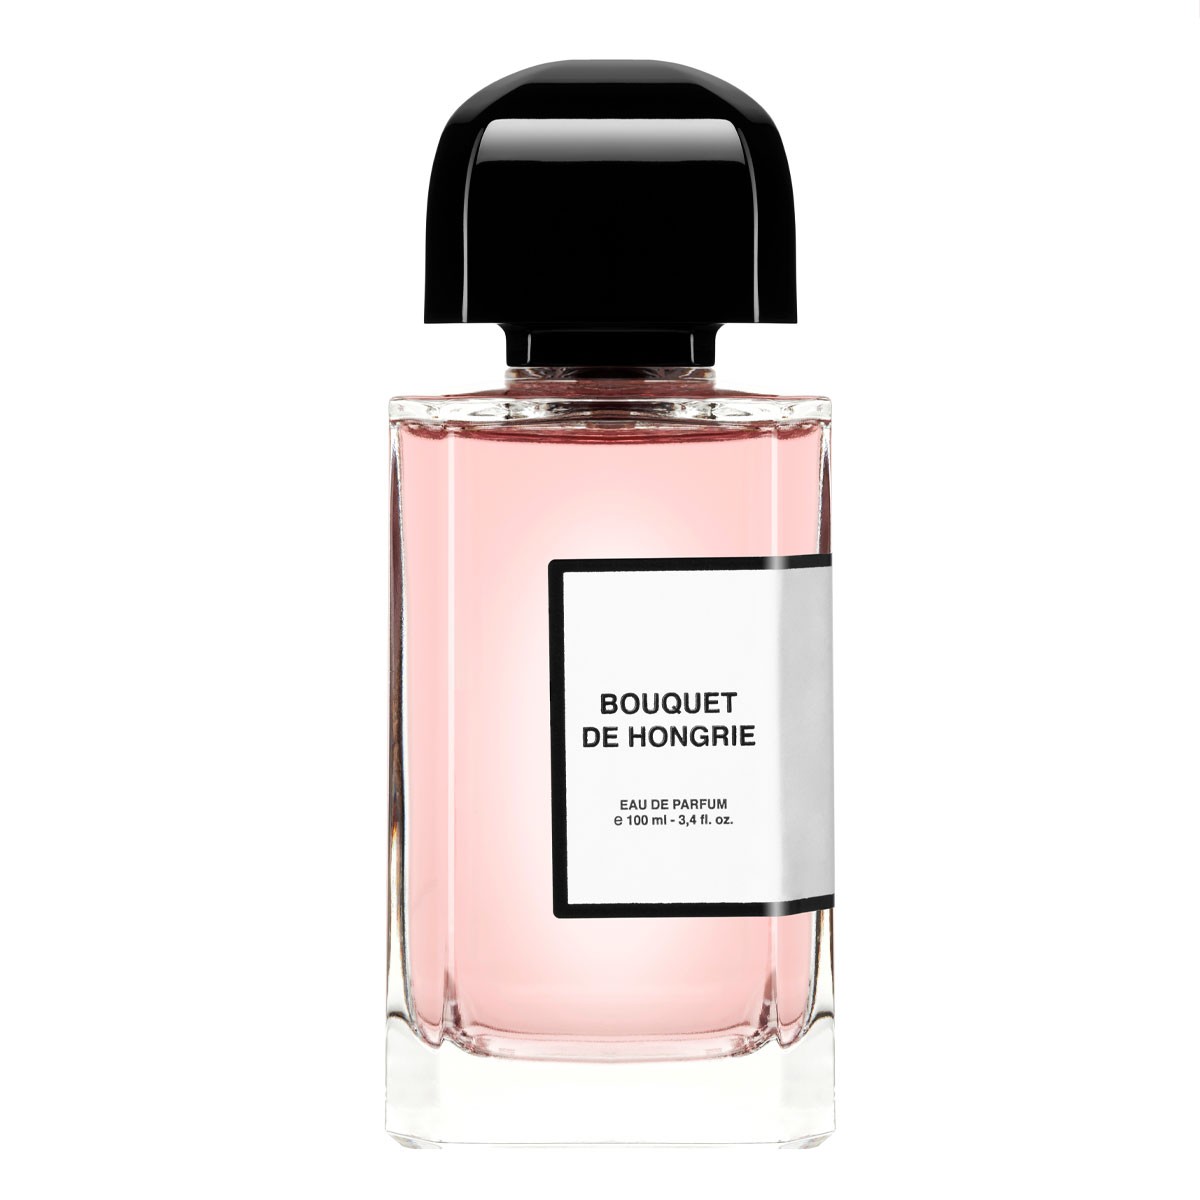 Descubre BDK Parfums en exclusiva en jcApotecari.